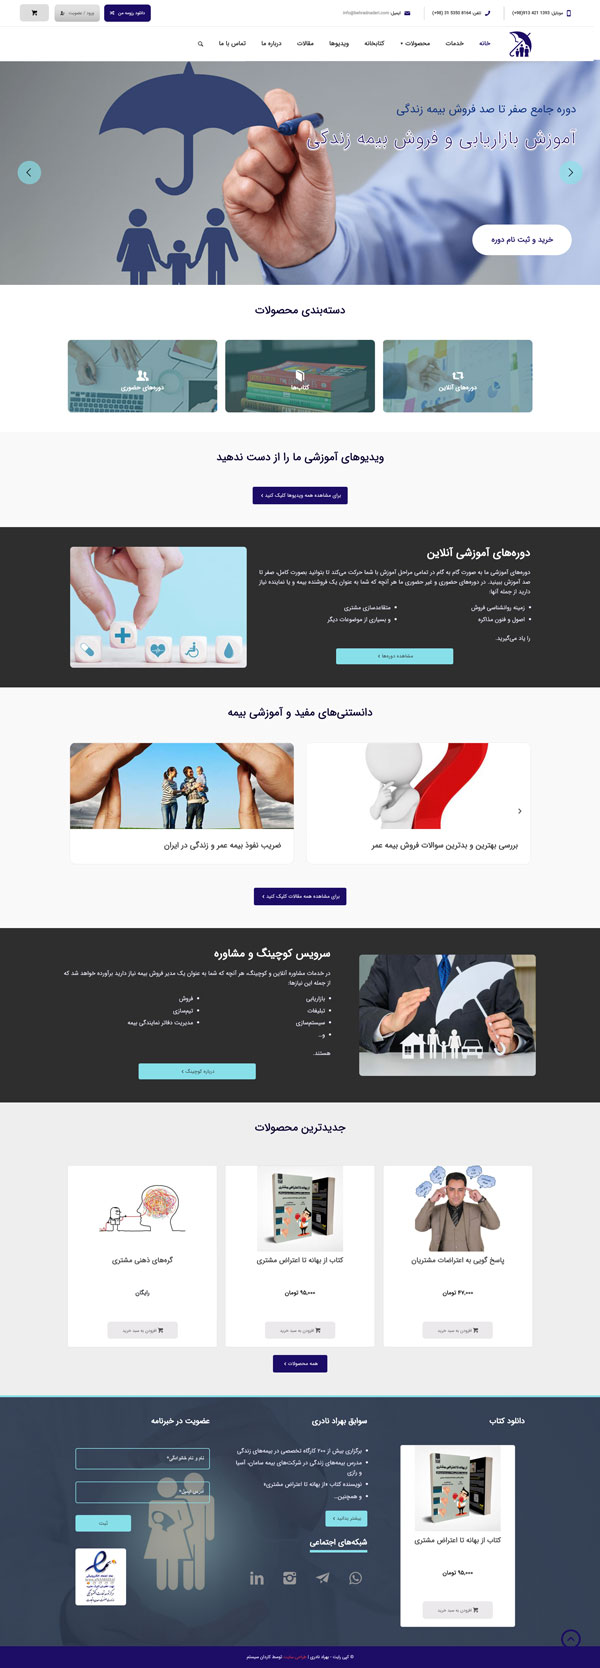 طراحی سایت بهراد نادری | فروشگاه اینترنتی، آموزشی و خدماتی بیمه و بازاریابی